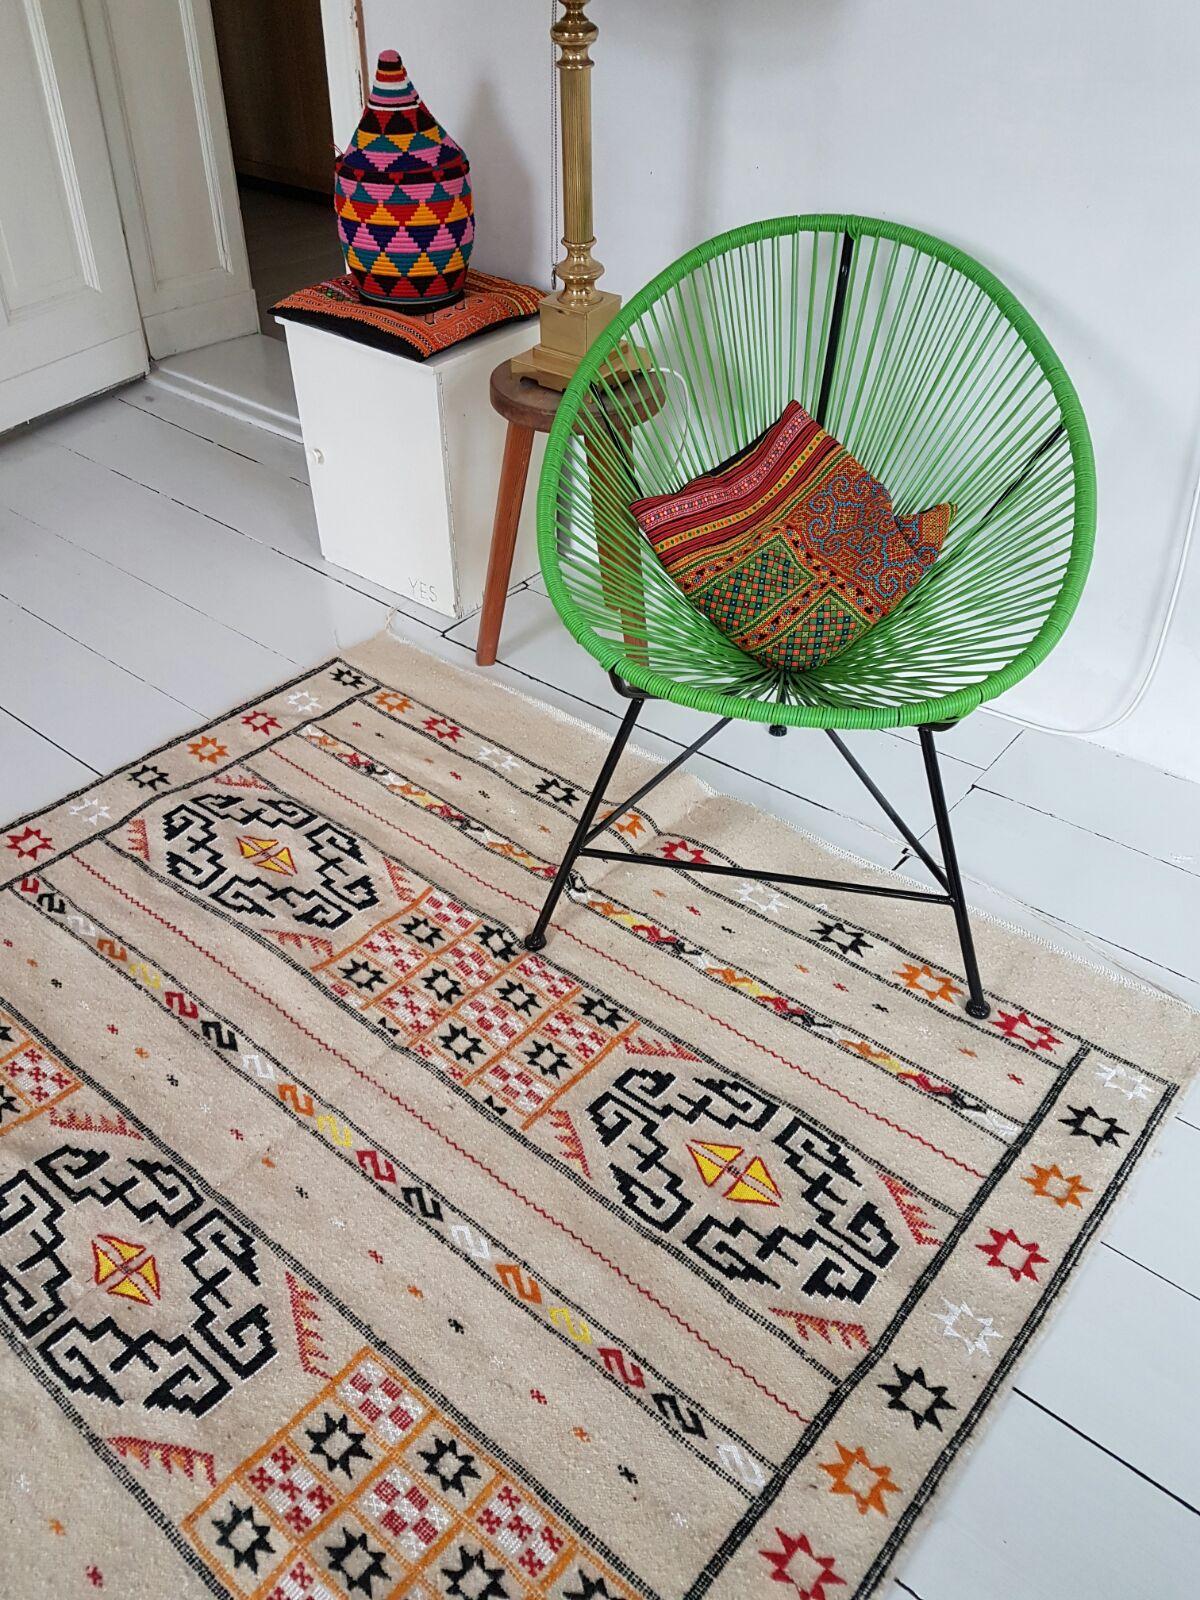 #interiordesign #moroccanrug #ethniclove #carpets #clean #hippie